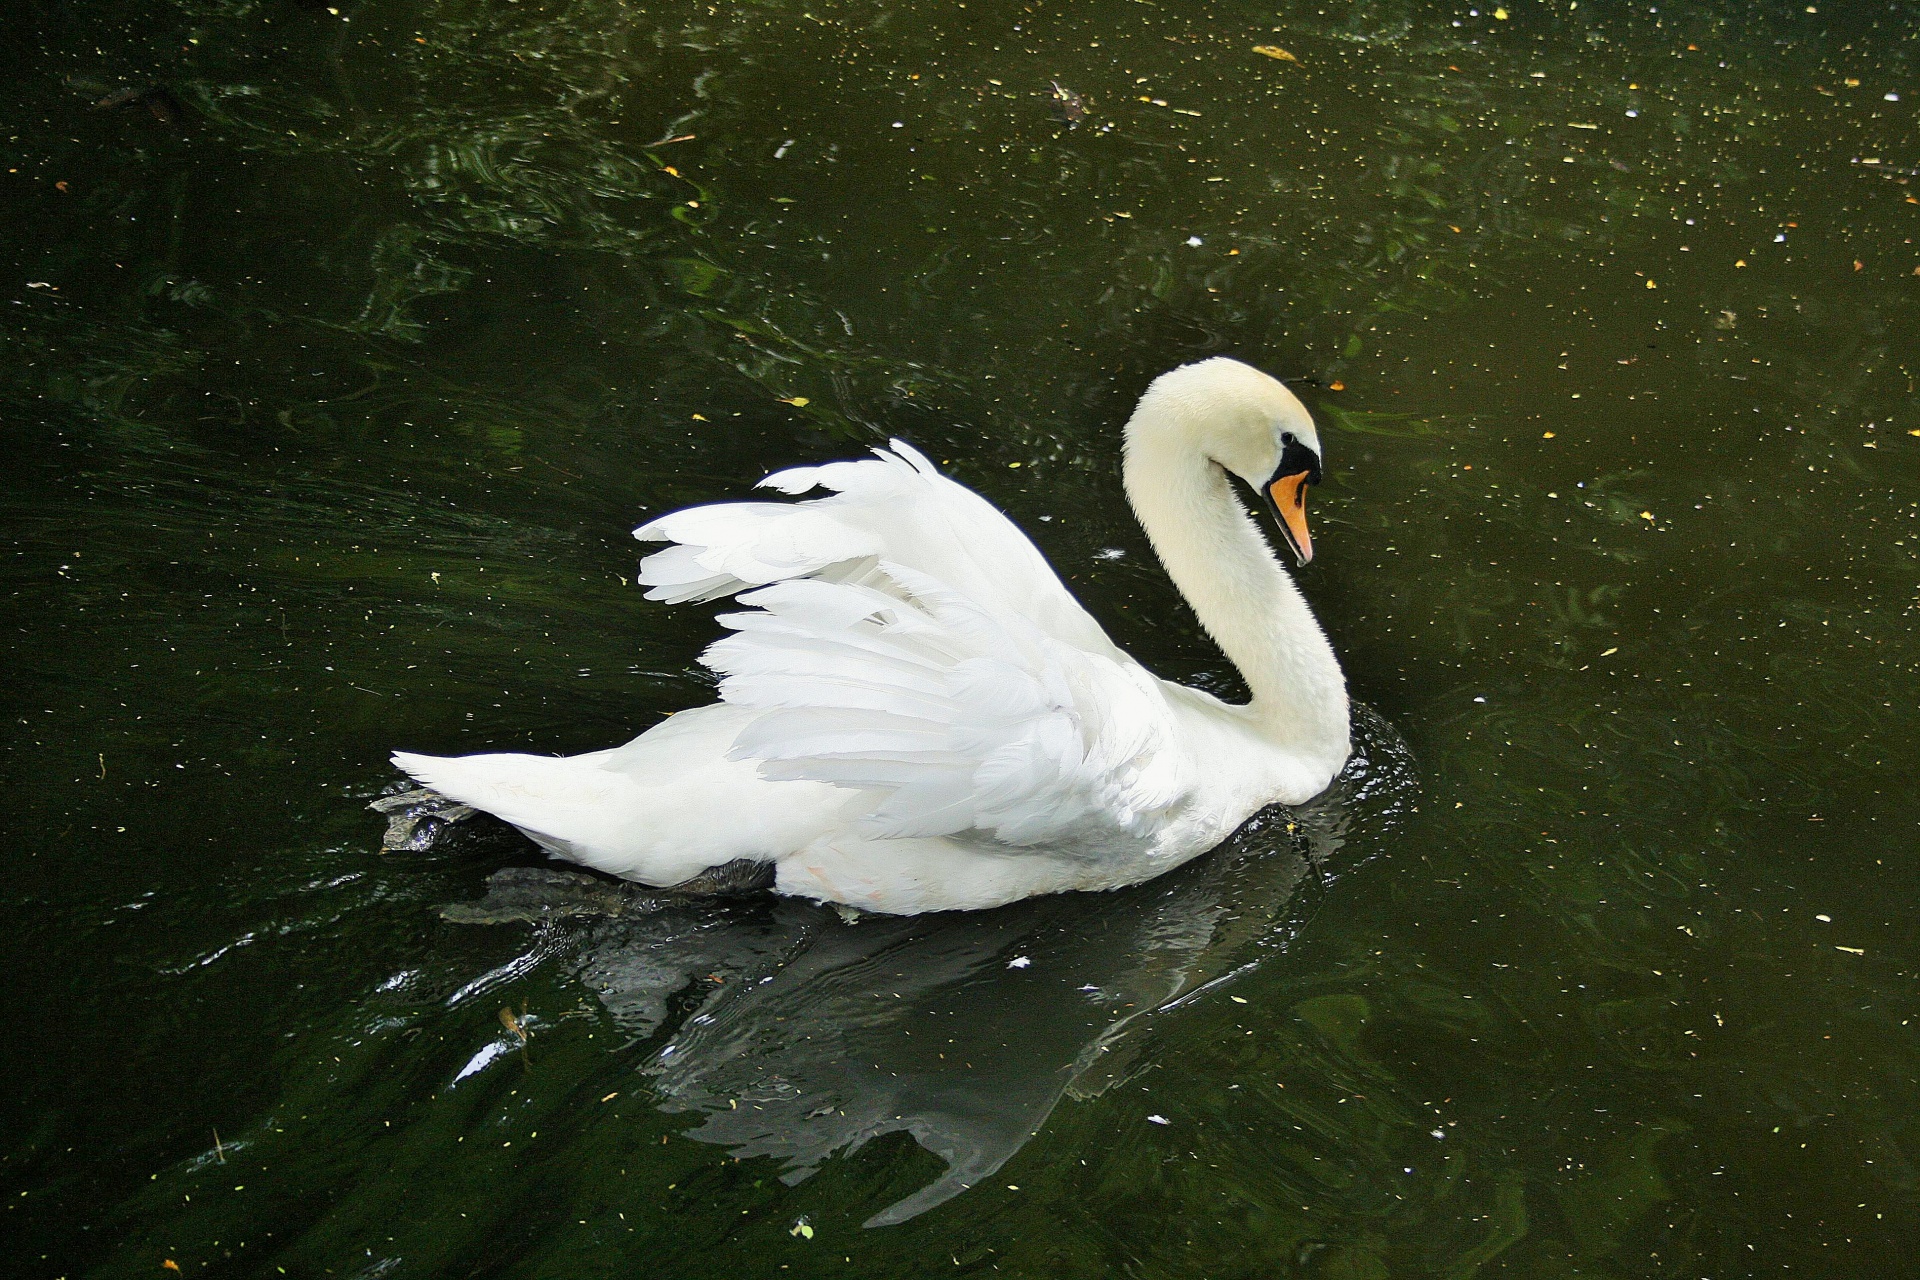 Cisne branca imponente sobre a água